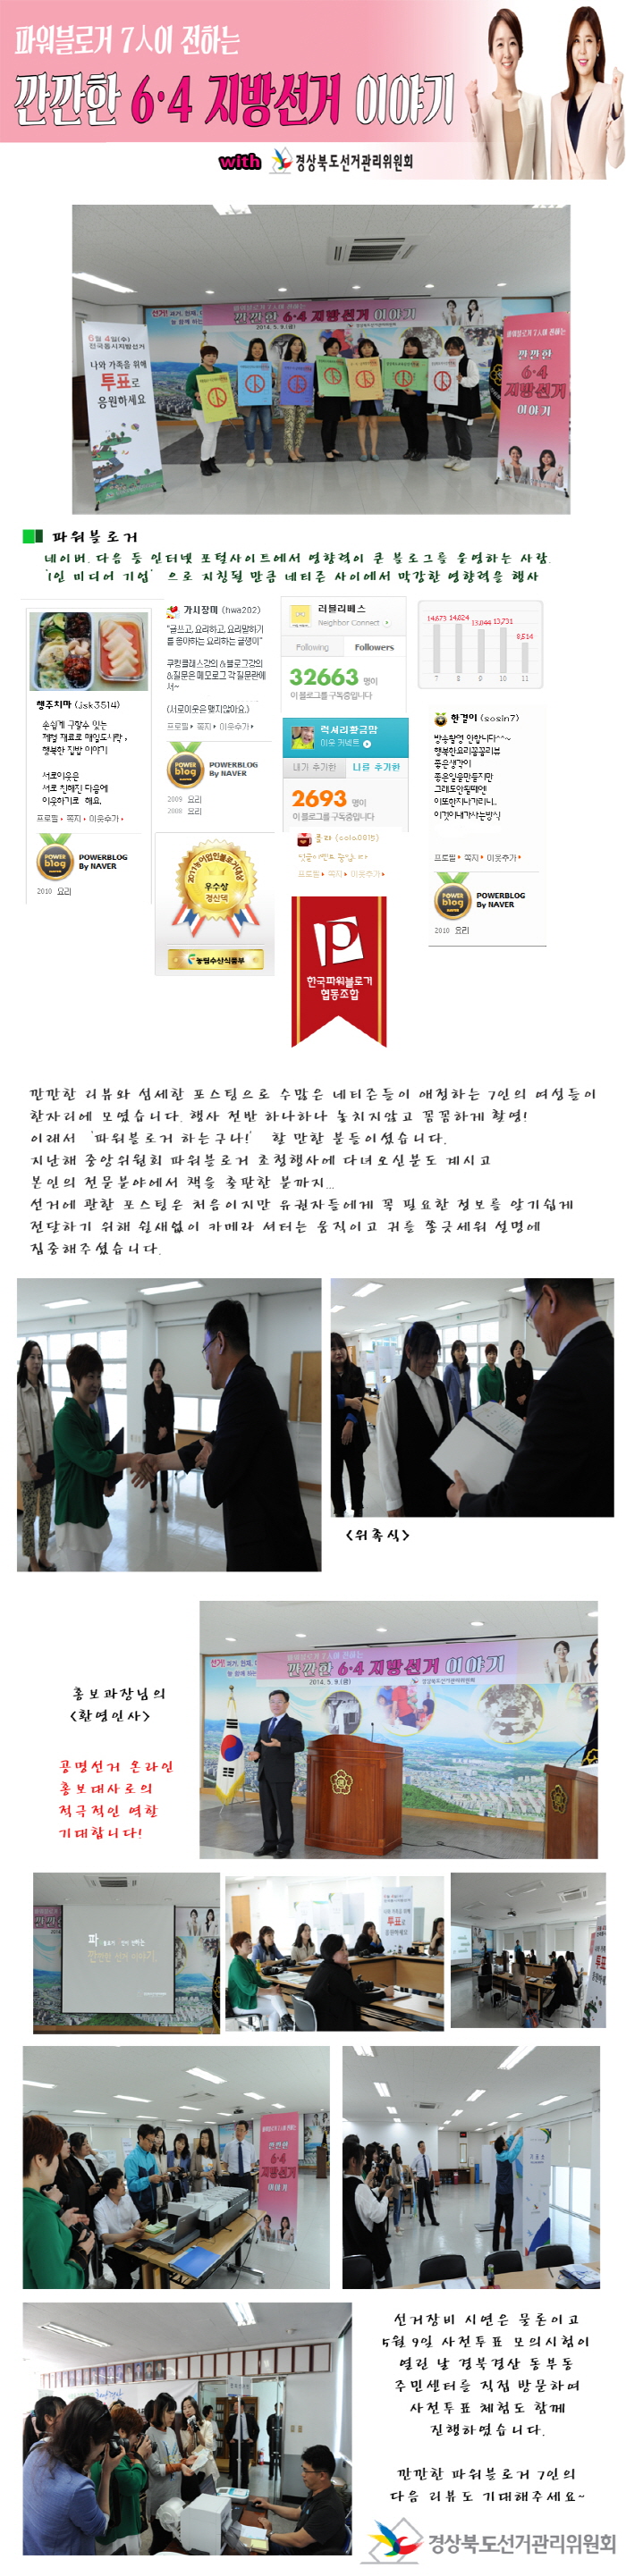 공명선거 온라인 홍보대사 위촉식